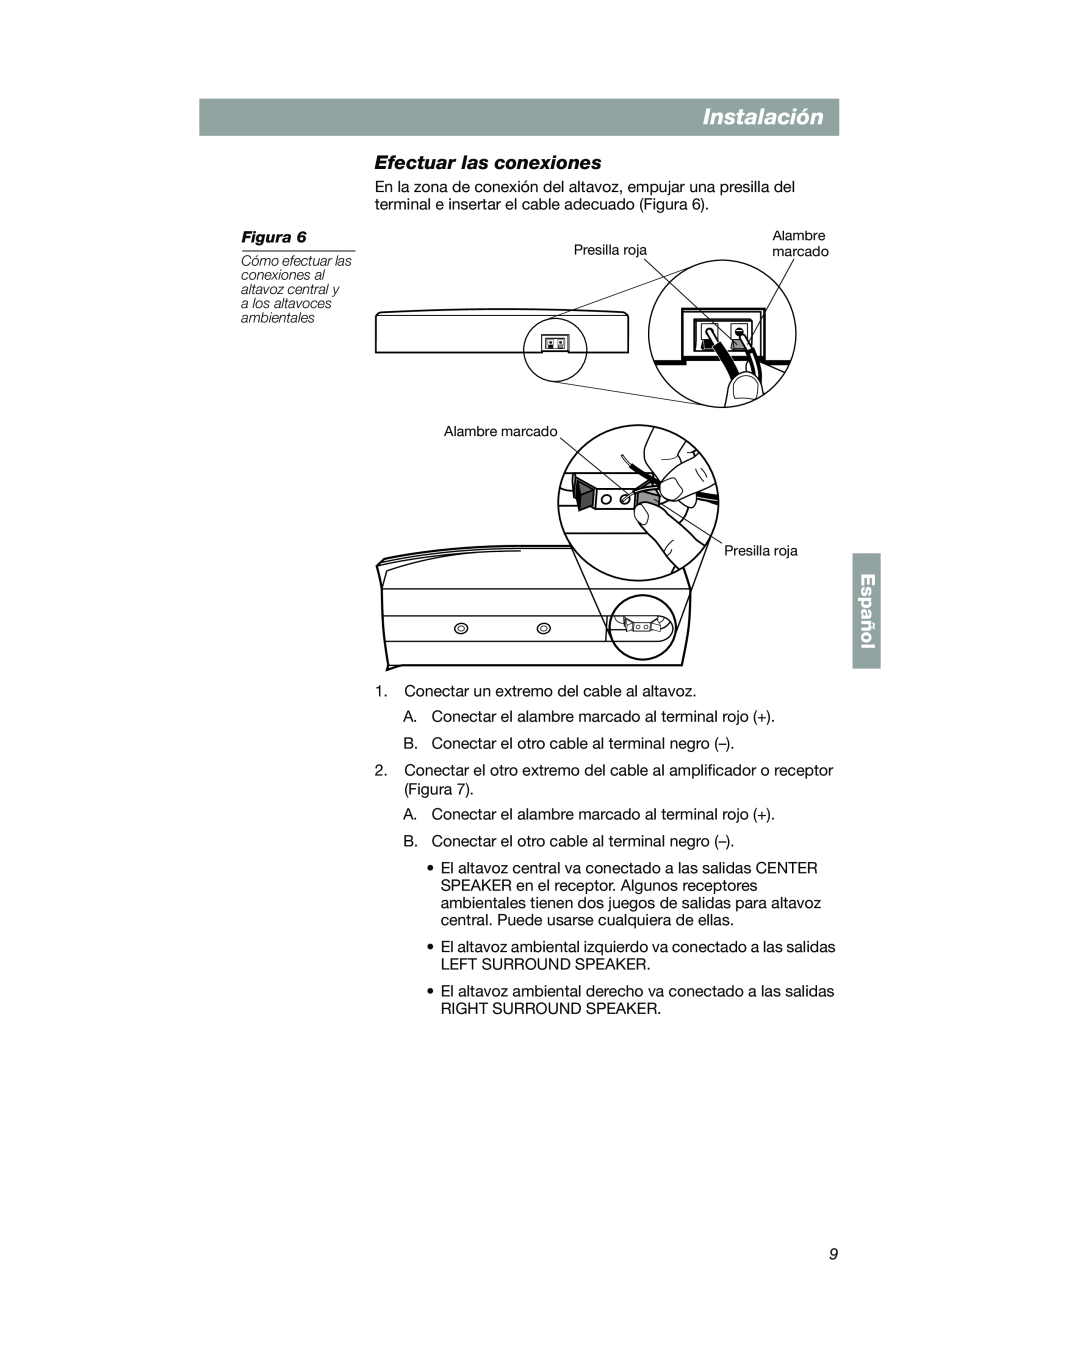 Bose VCS-10 manual Efectuar las conexiones, Instalación, Español, Alambre marcado Presilla roja 